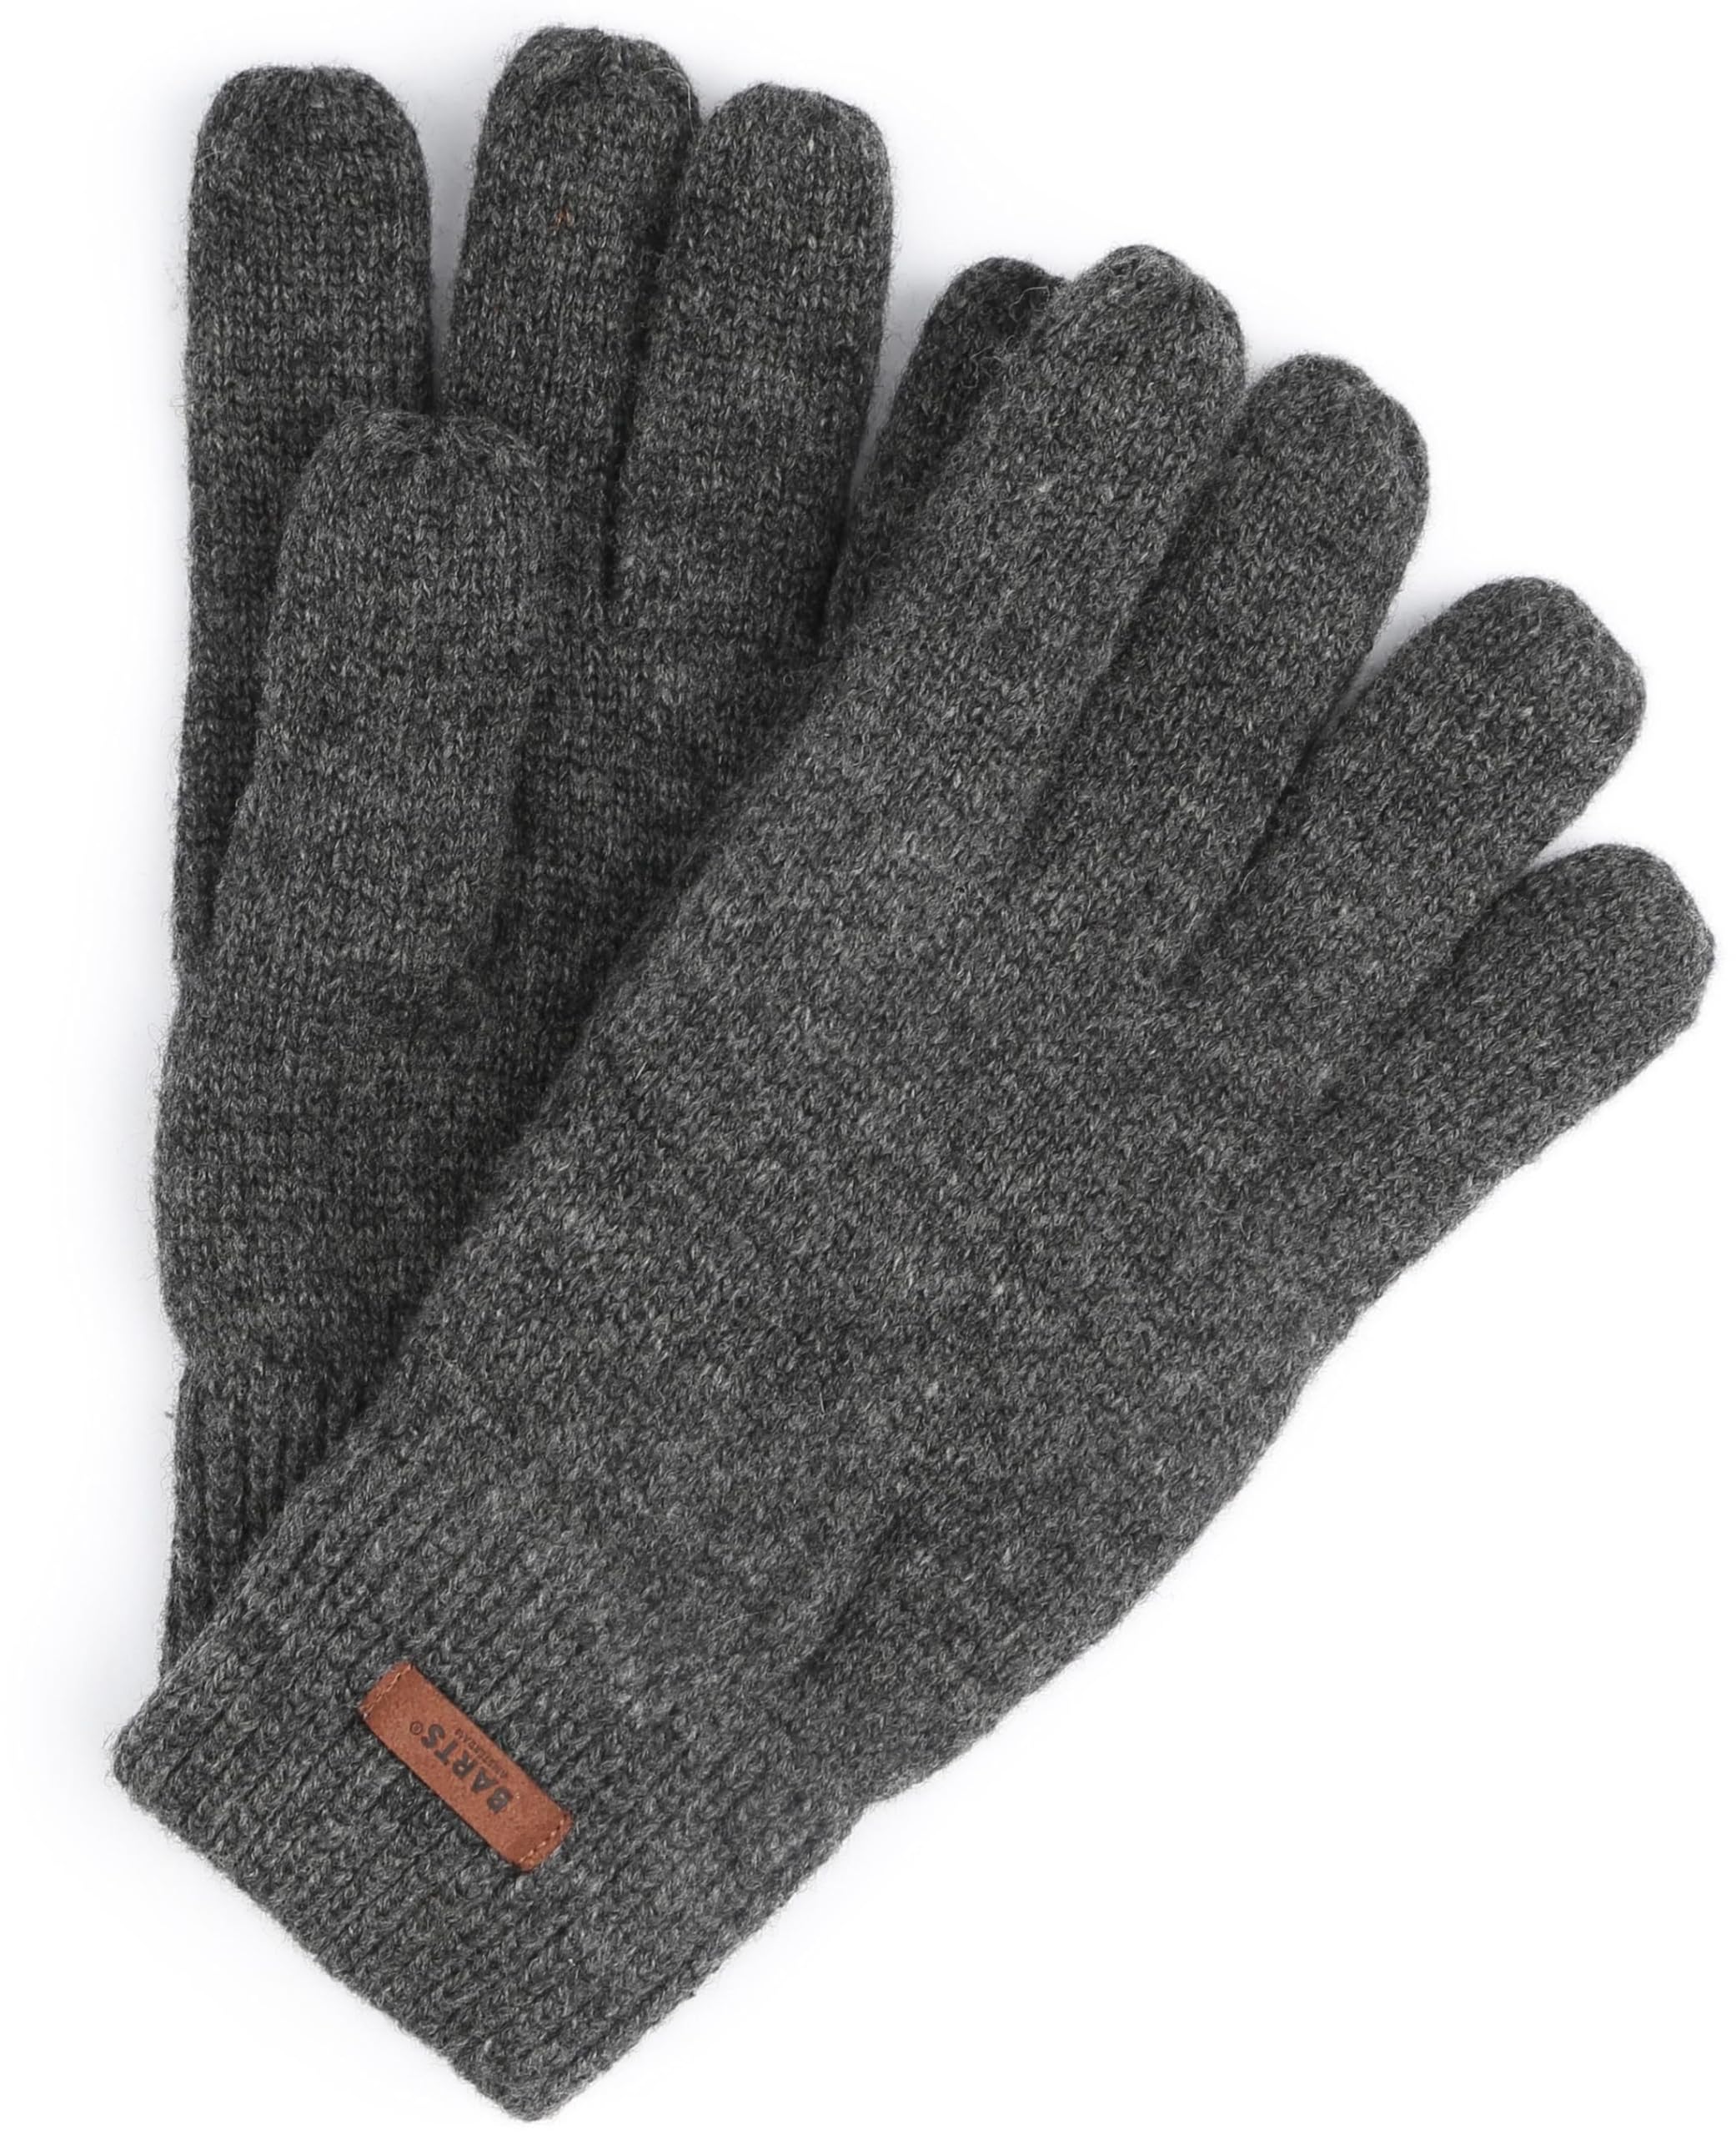 Barts Herren Haakon Glove Handschuhe, Grau (CHARCOAL 0021), Medium (Herstellergröße: S/M)